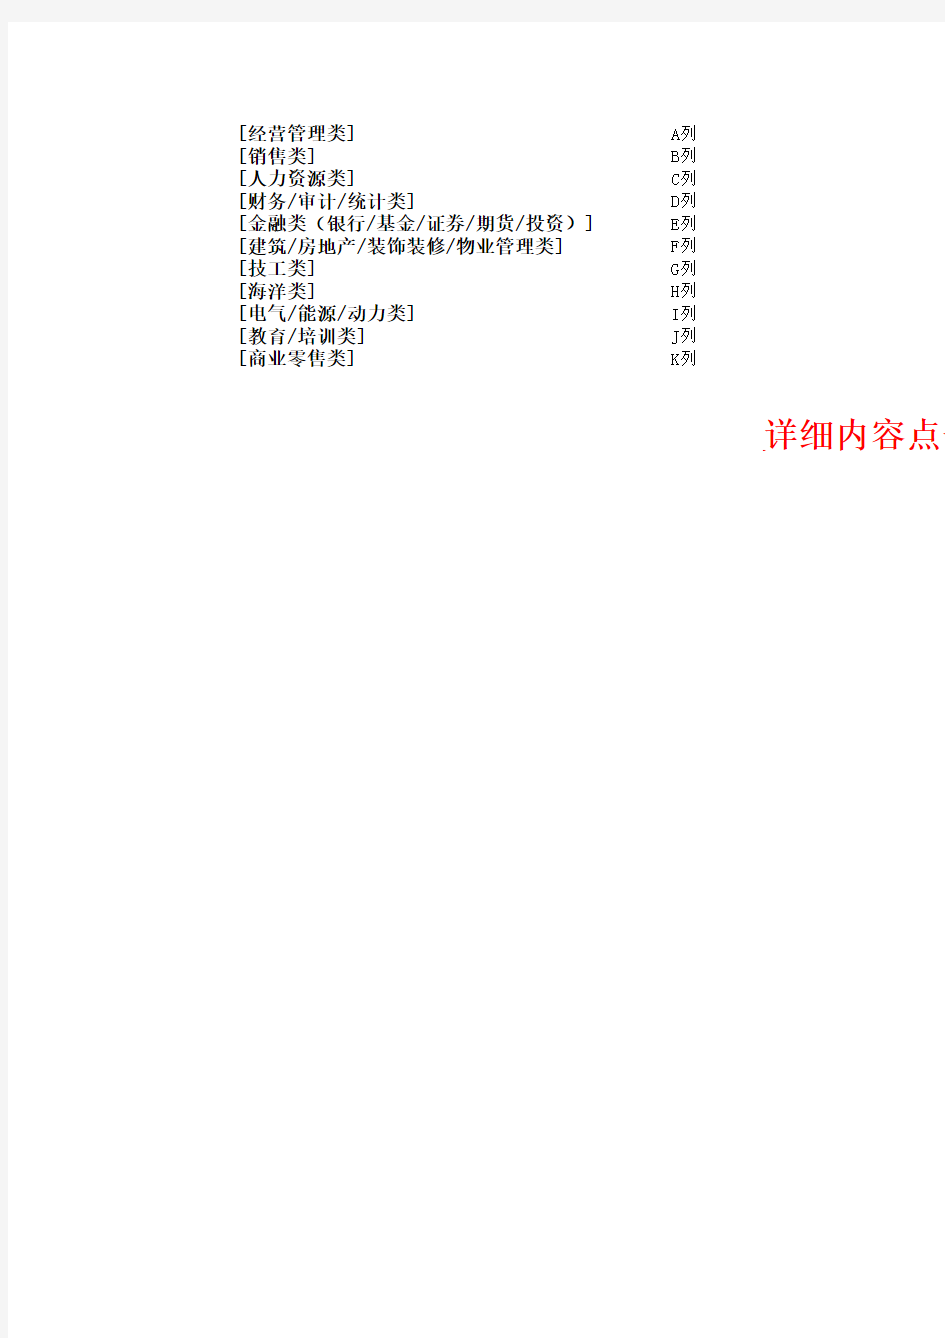 中国常见职业分类参考表